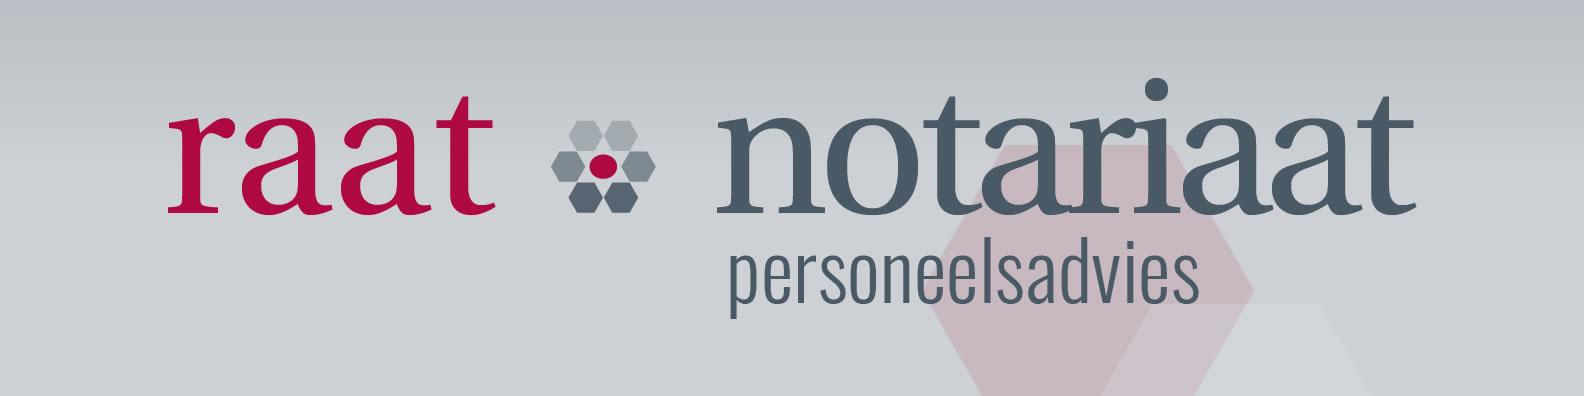 Kandidaat-notaris (3, 4 of 5 dagen)